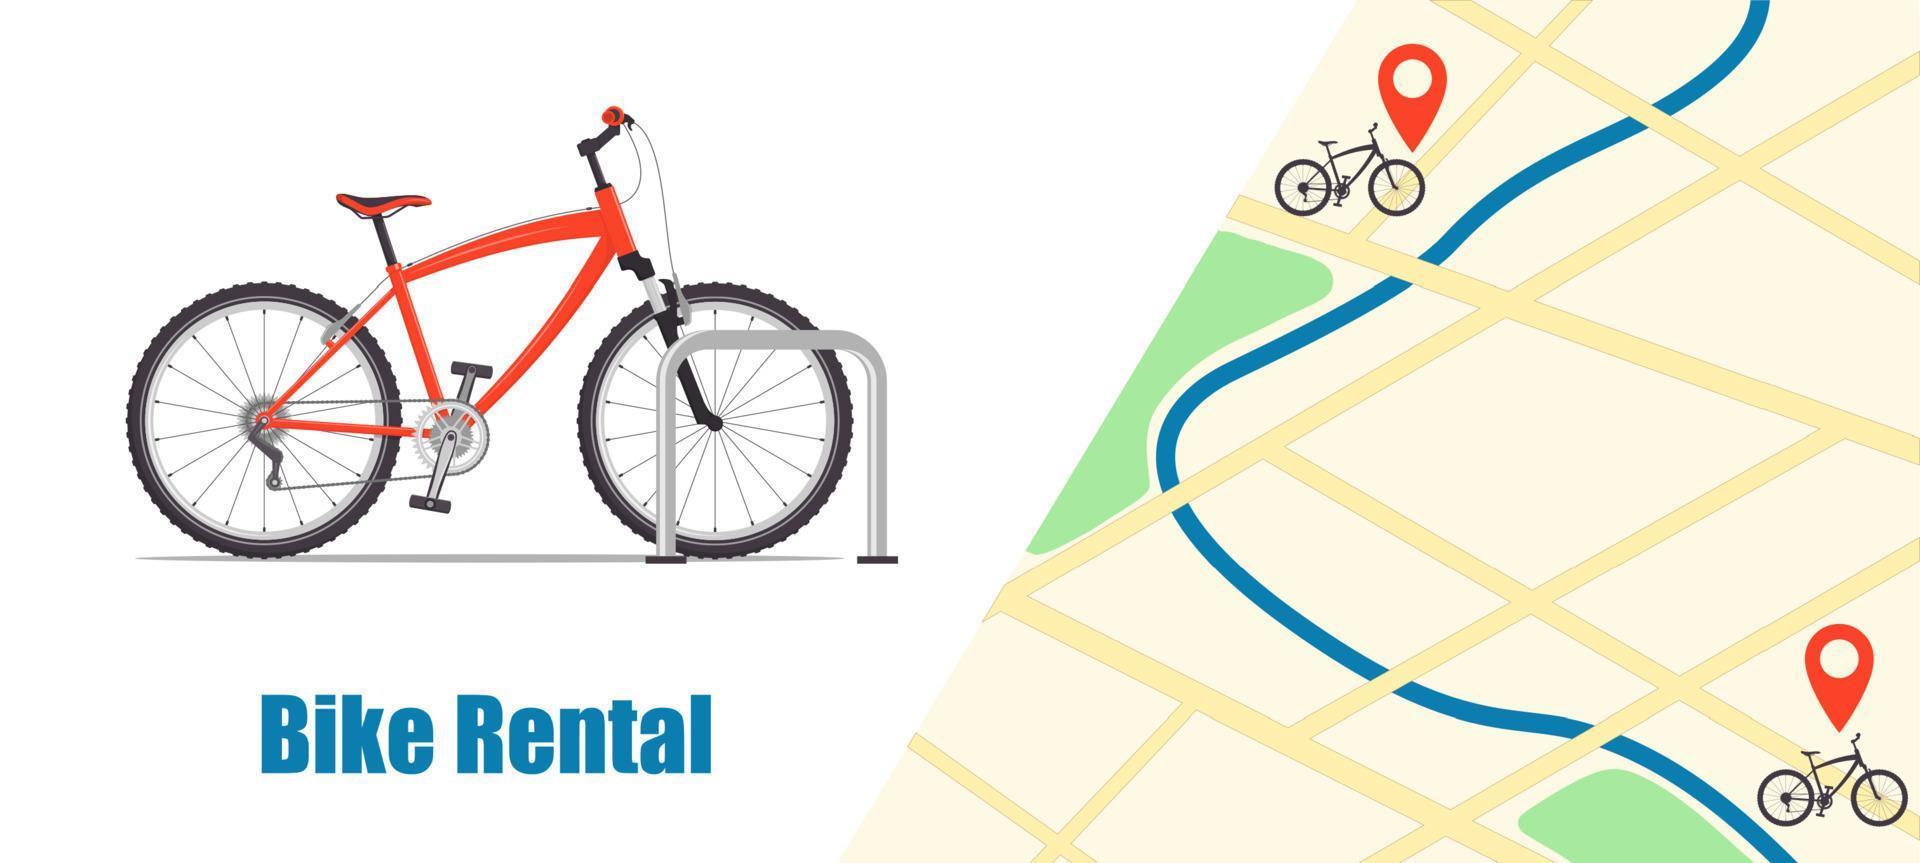 modern stad of berg fiets voor fiets verhuur onderhoud. stad kaart met pinnen en Fietsen. fiets verhuur spandoek. fiets sharing concept illustratie, vector. vector